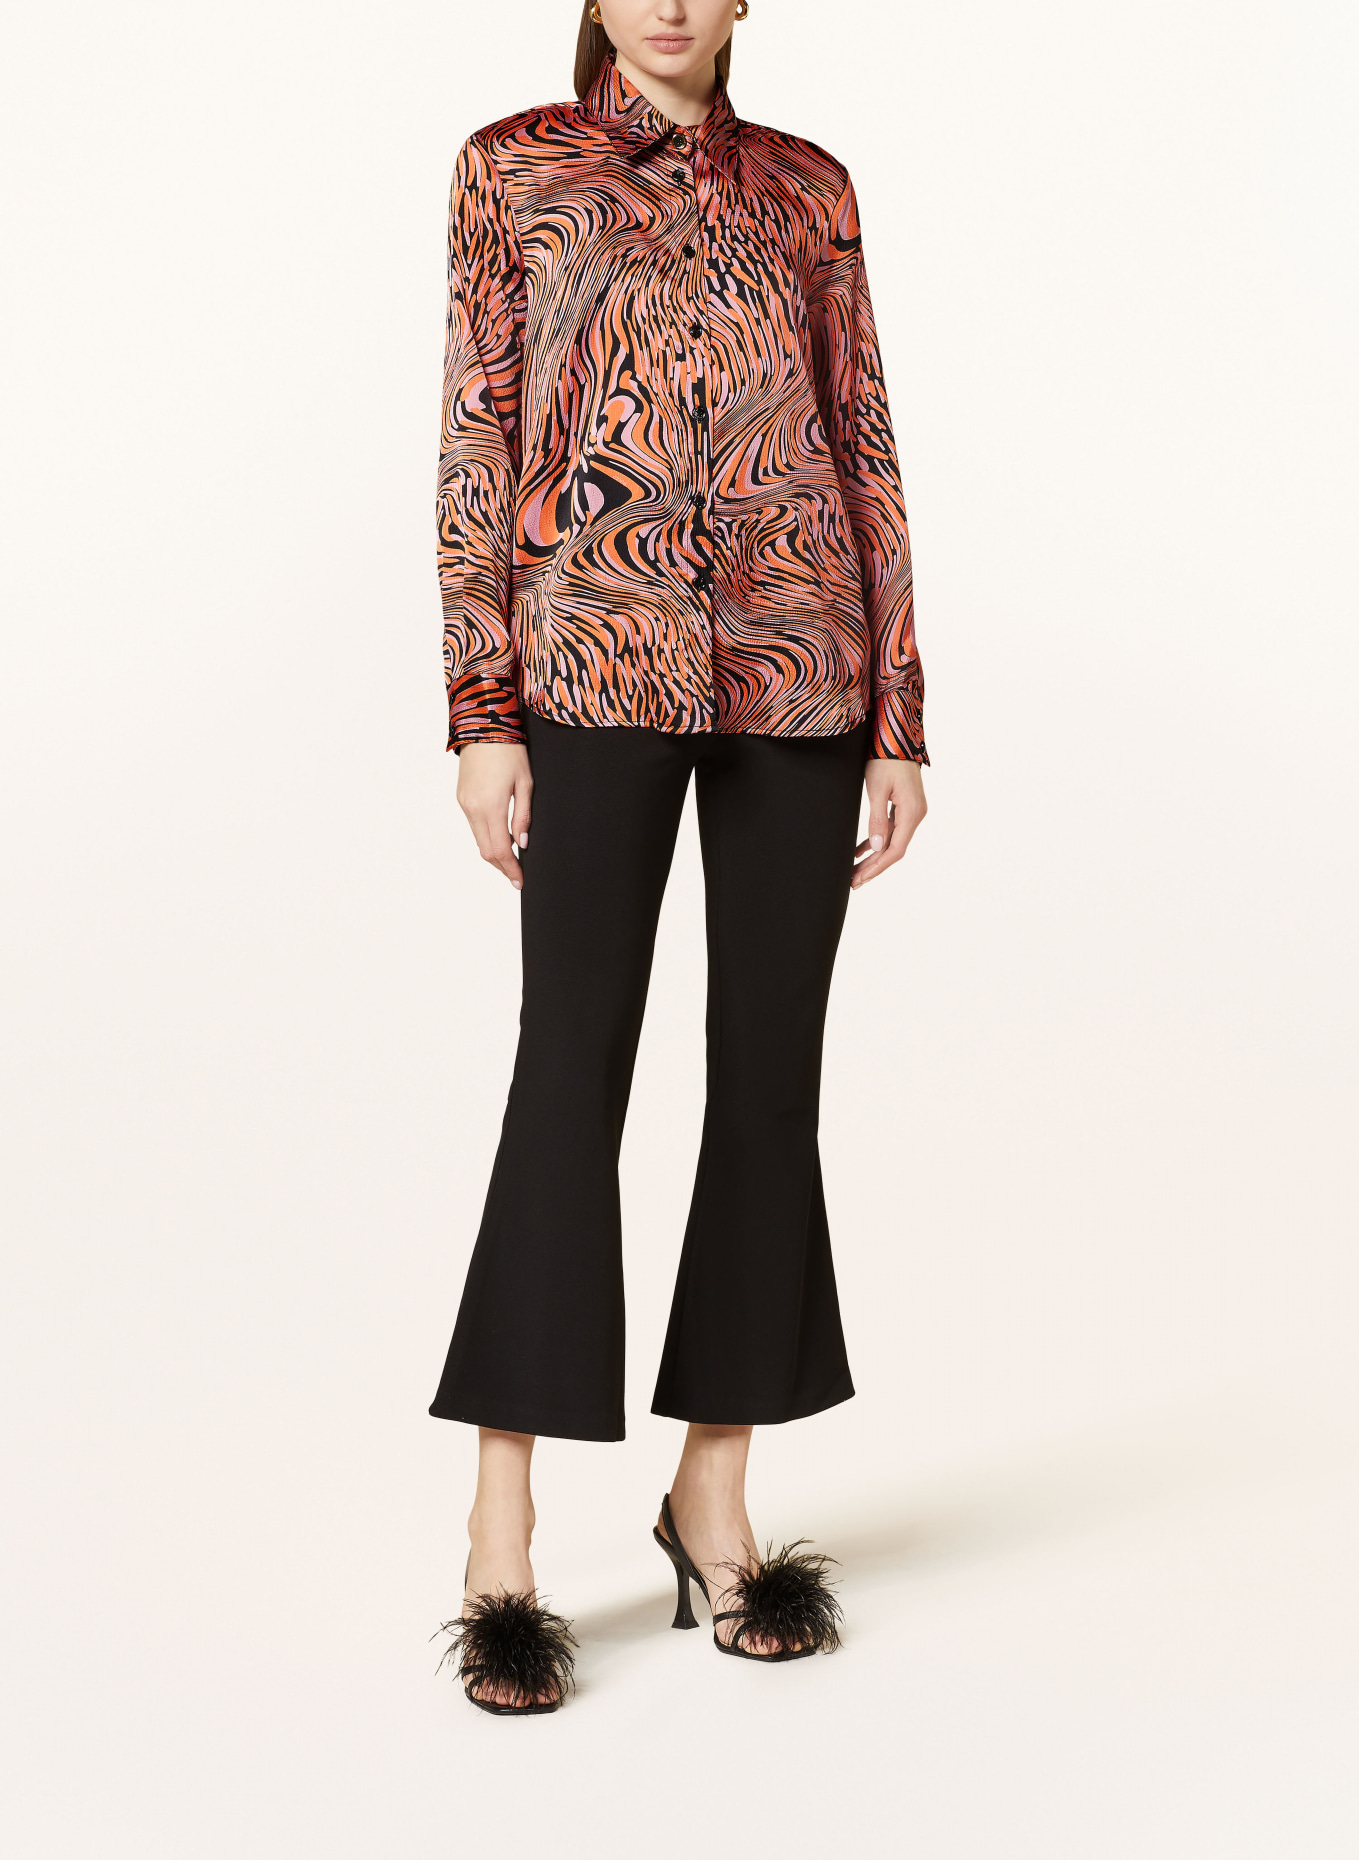 PINKO Shirt blouse CALLISTO made of satin, Color: BLACK/ ORANGE/ PINK (Image 2)